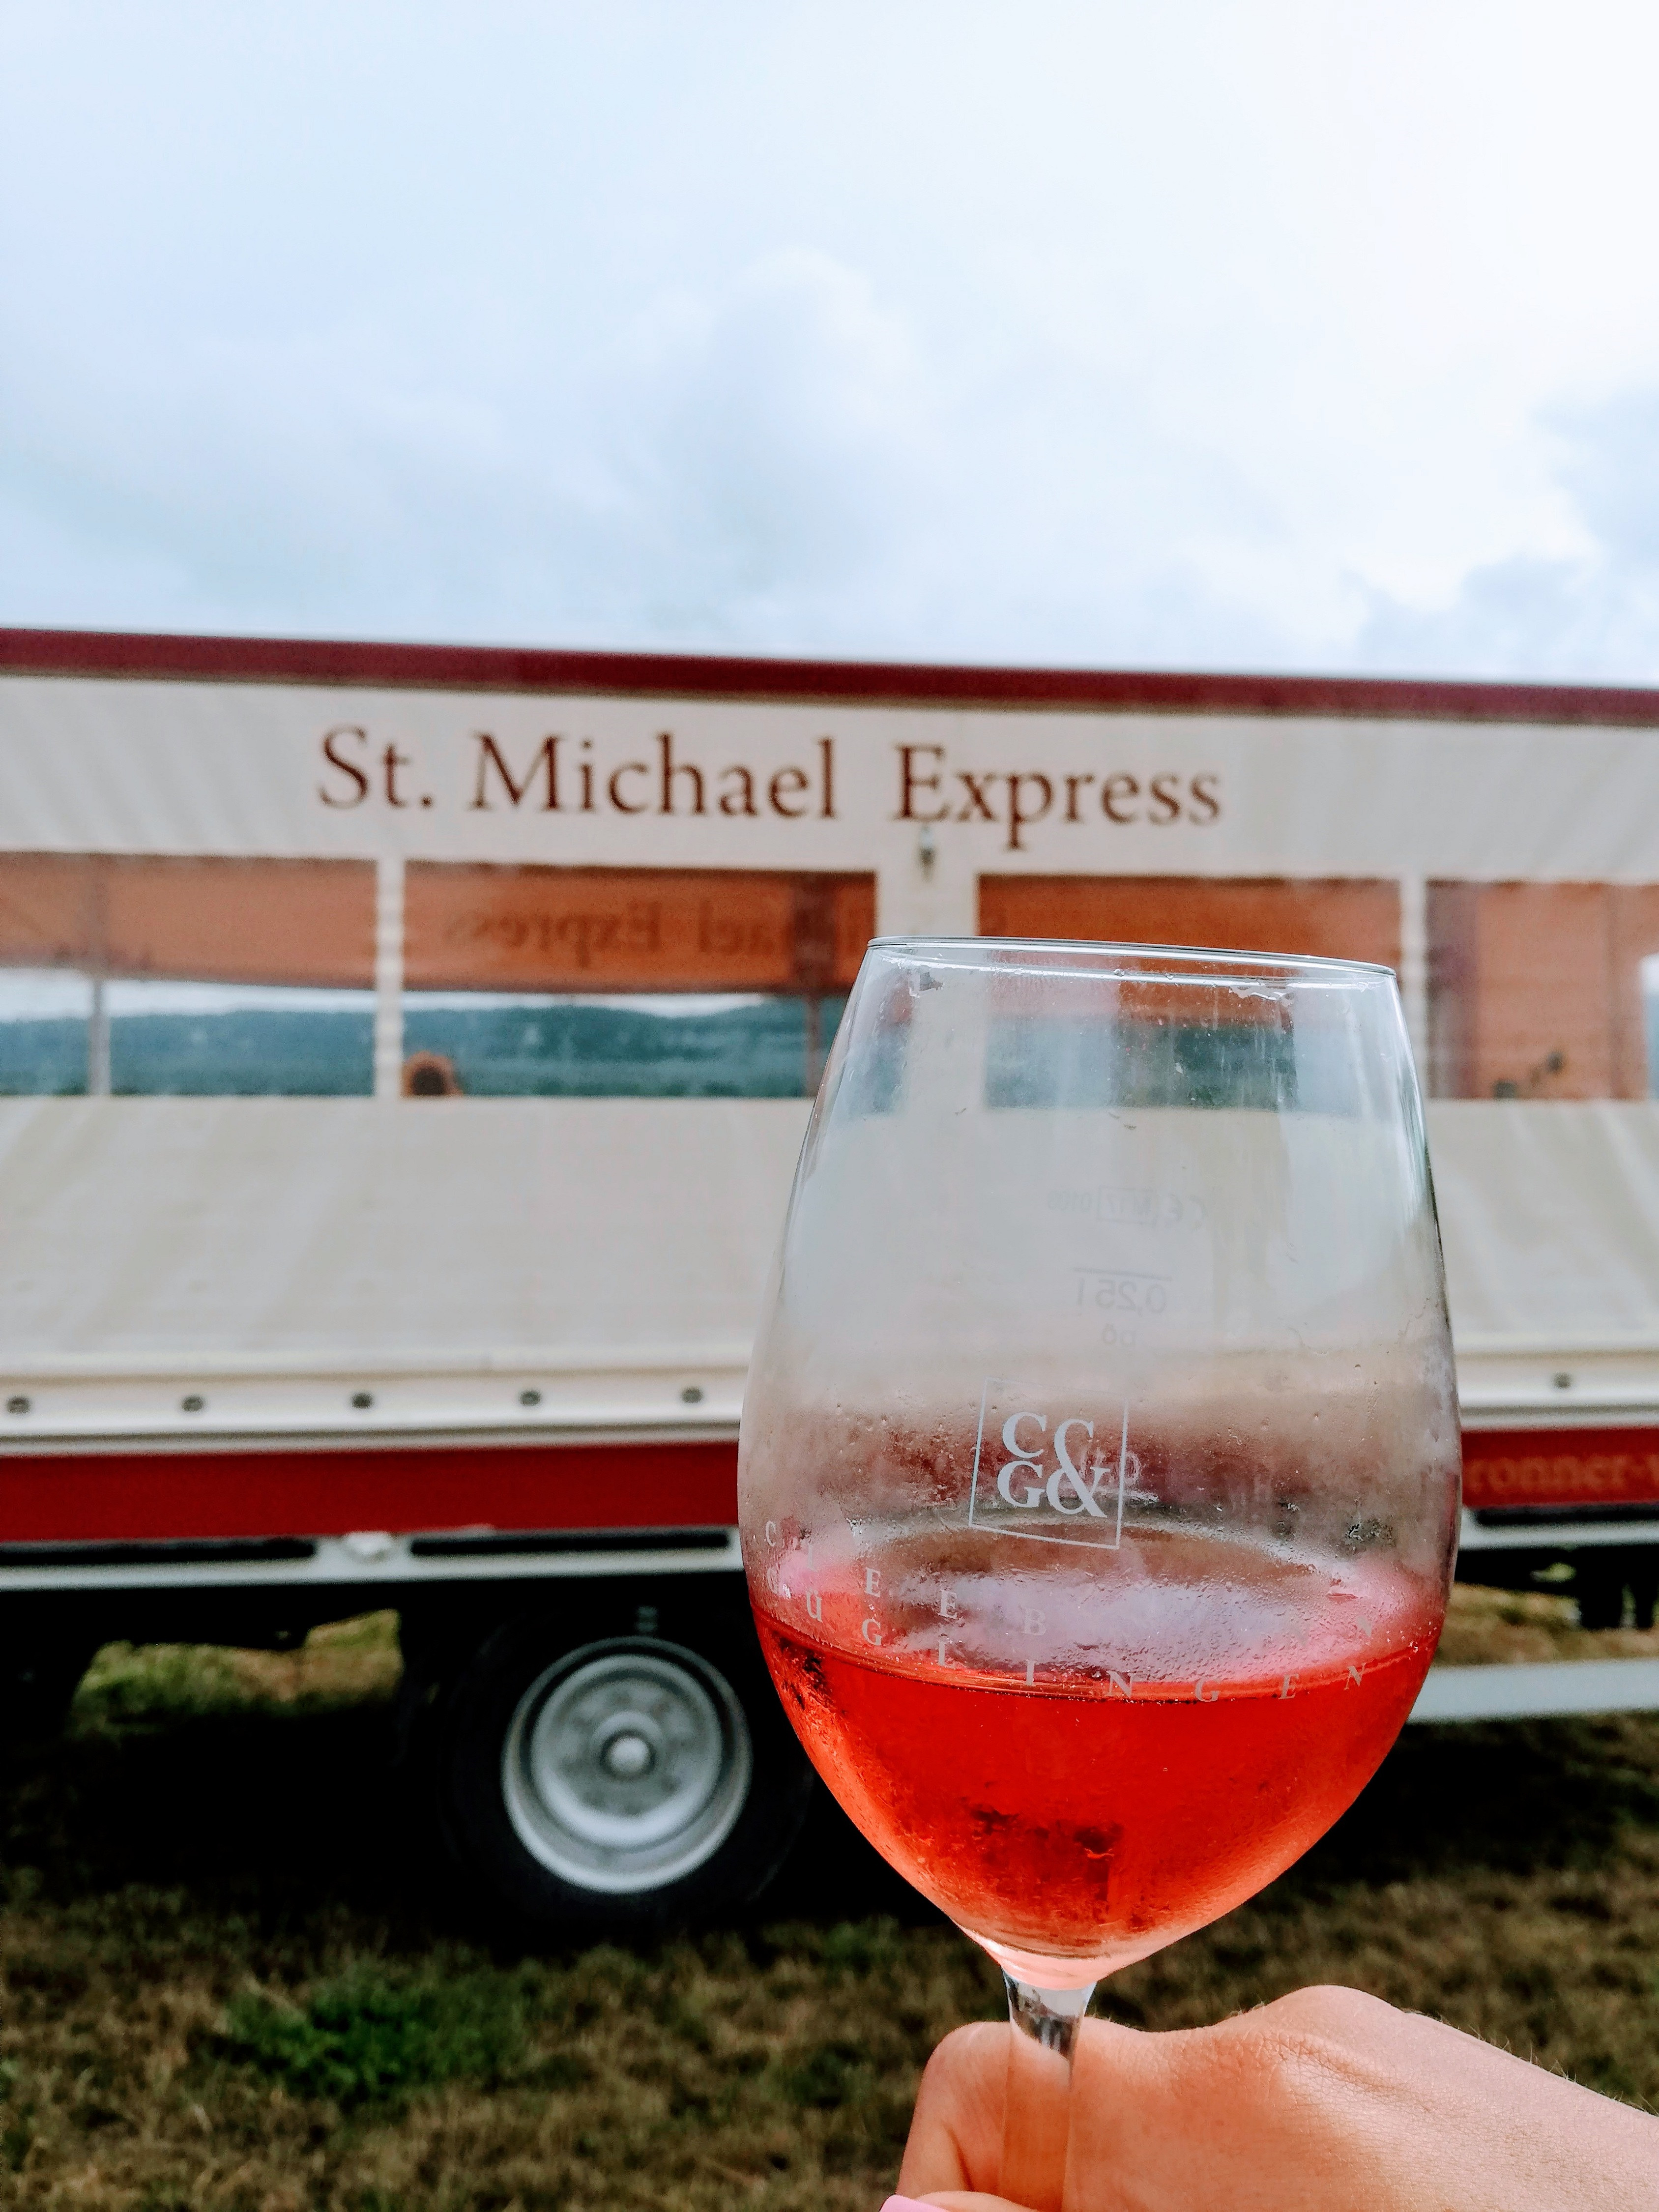 St. Michael Express | Planwagen- und Weinbergrundfahrten | Cleebronn